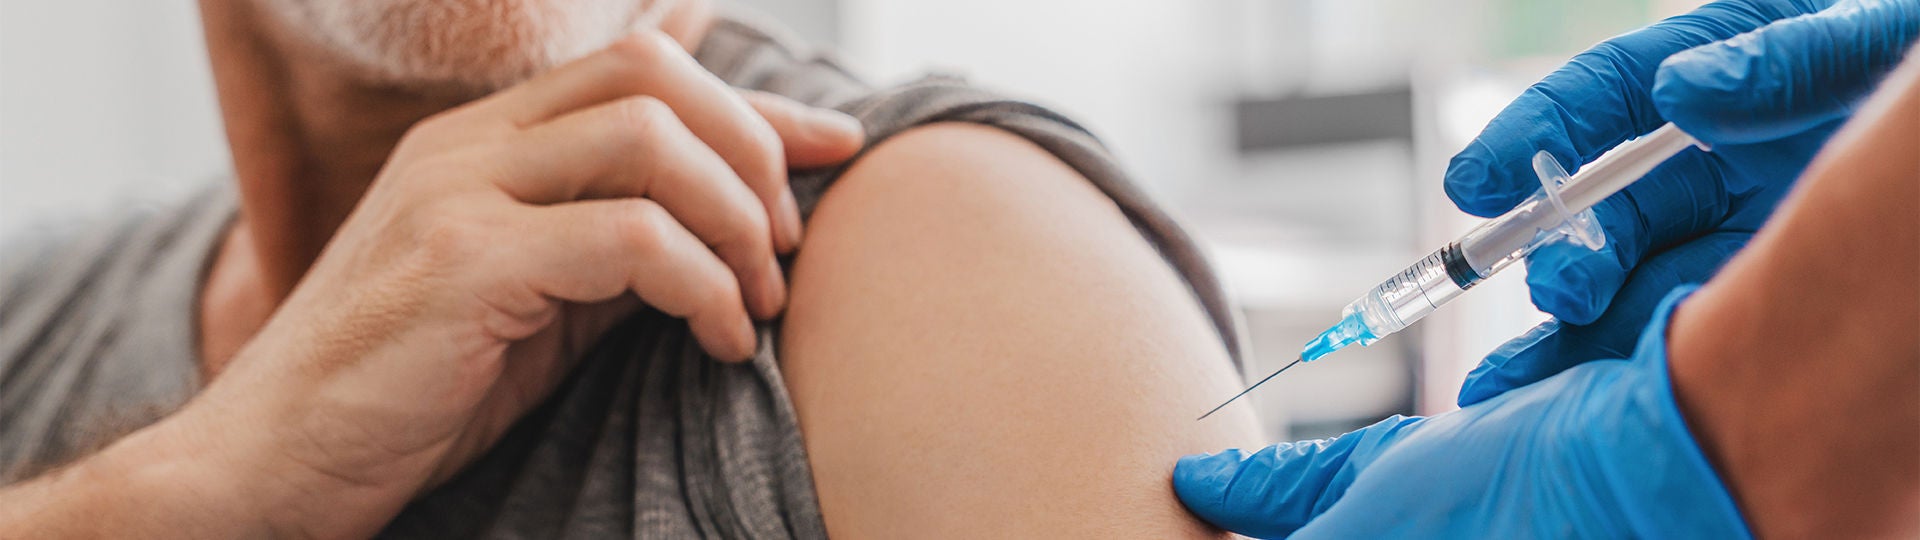 Eine Impfspritze zielt auf einen Oberarm.